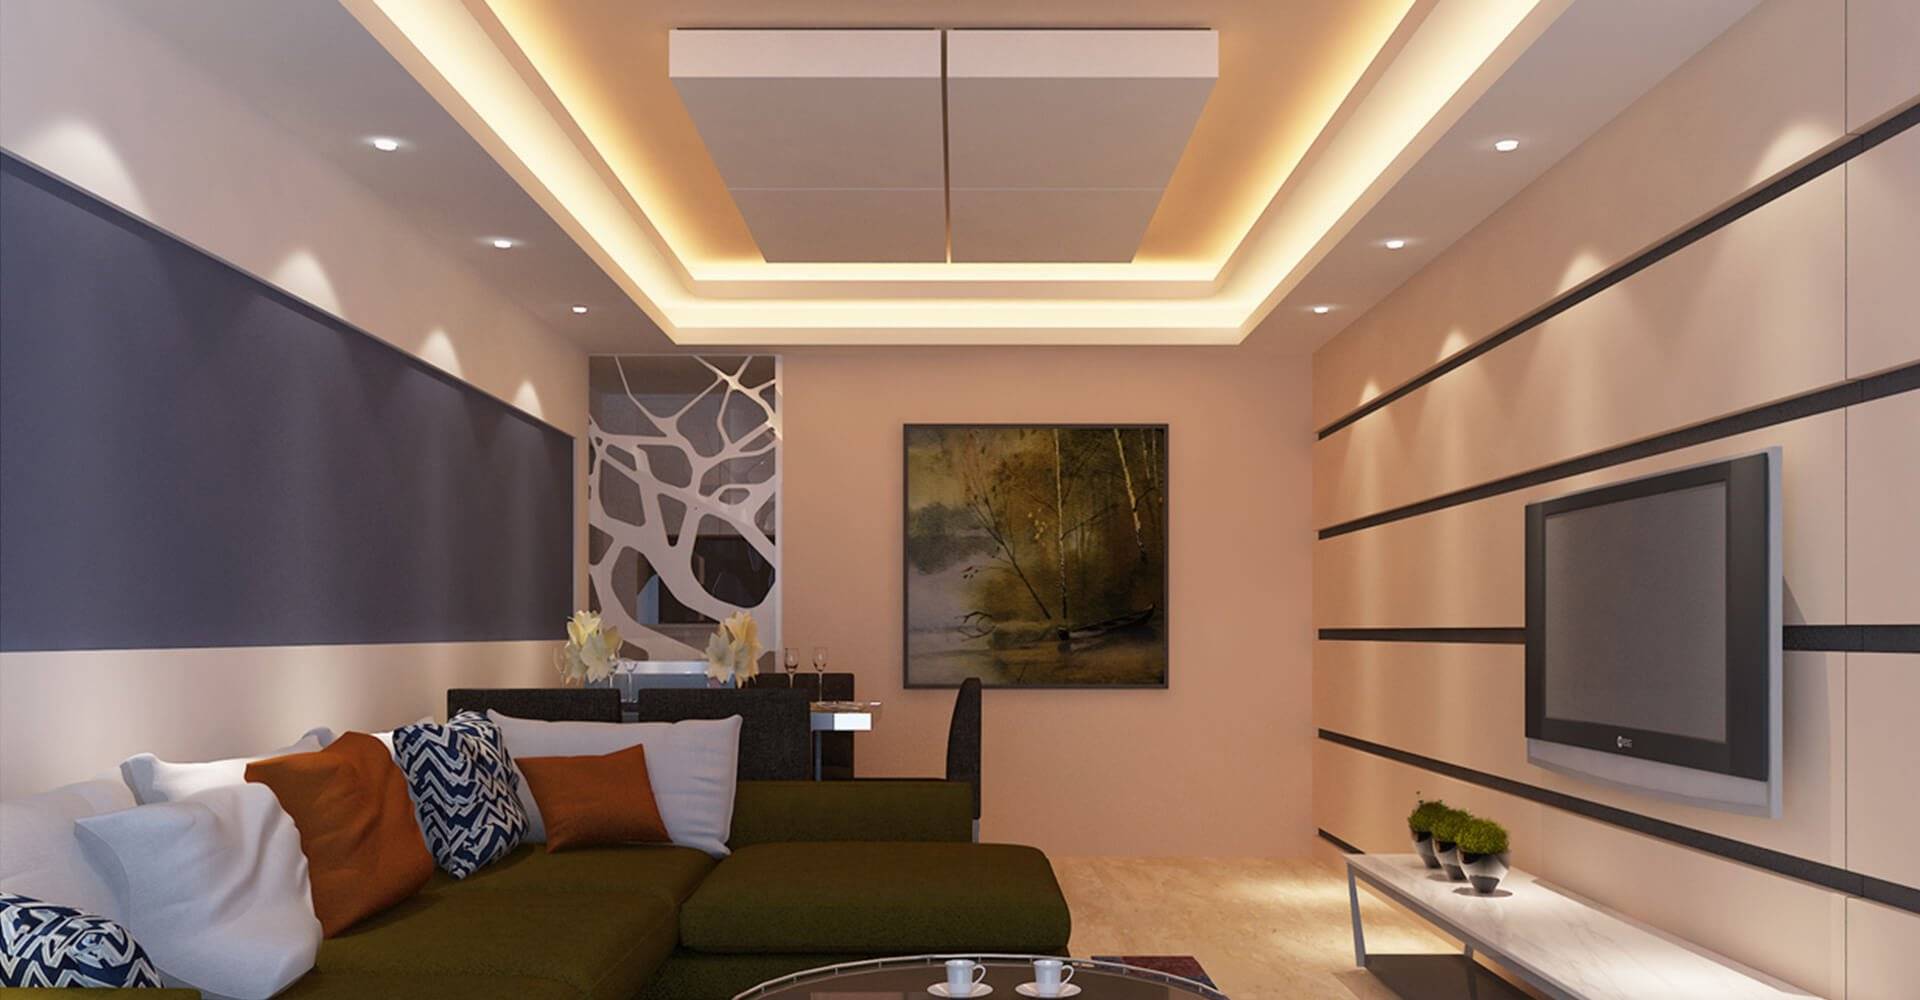 Потолок из гипсокартона фото в маленьких комнатах – фотогалерея в маленькой прямоугольной комнате, дизайн подвесного потолка